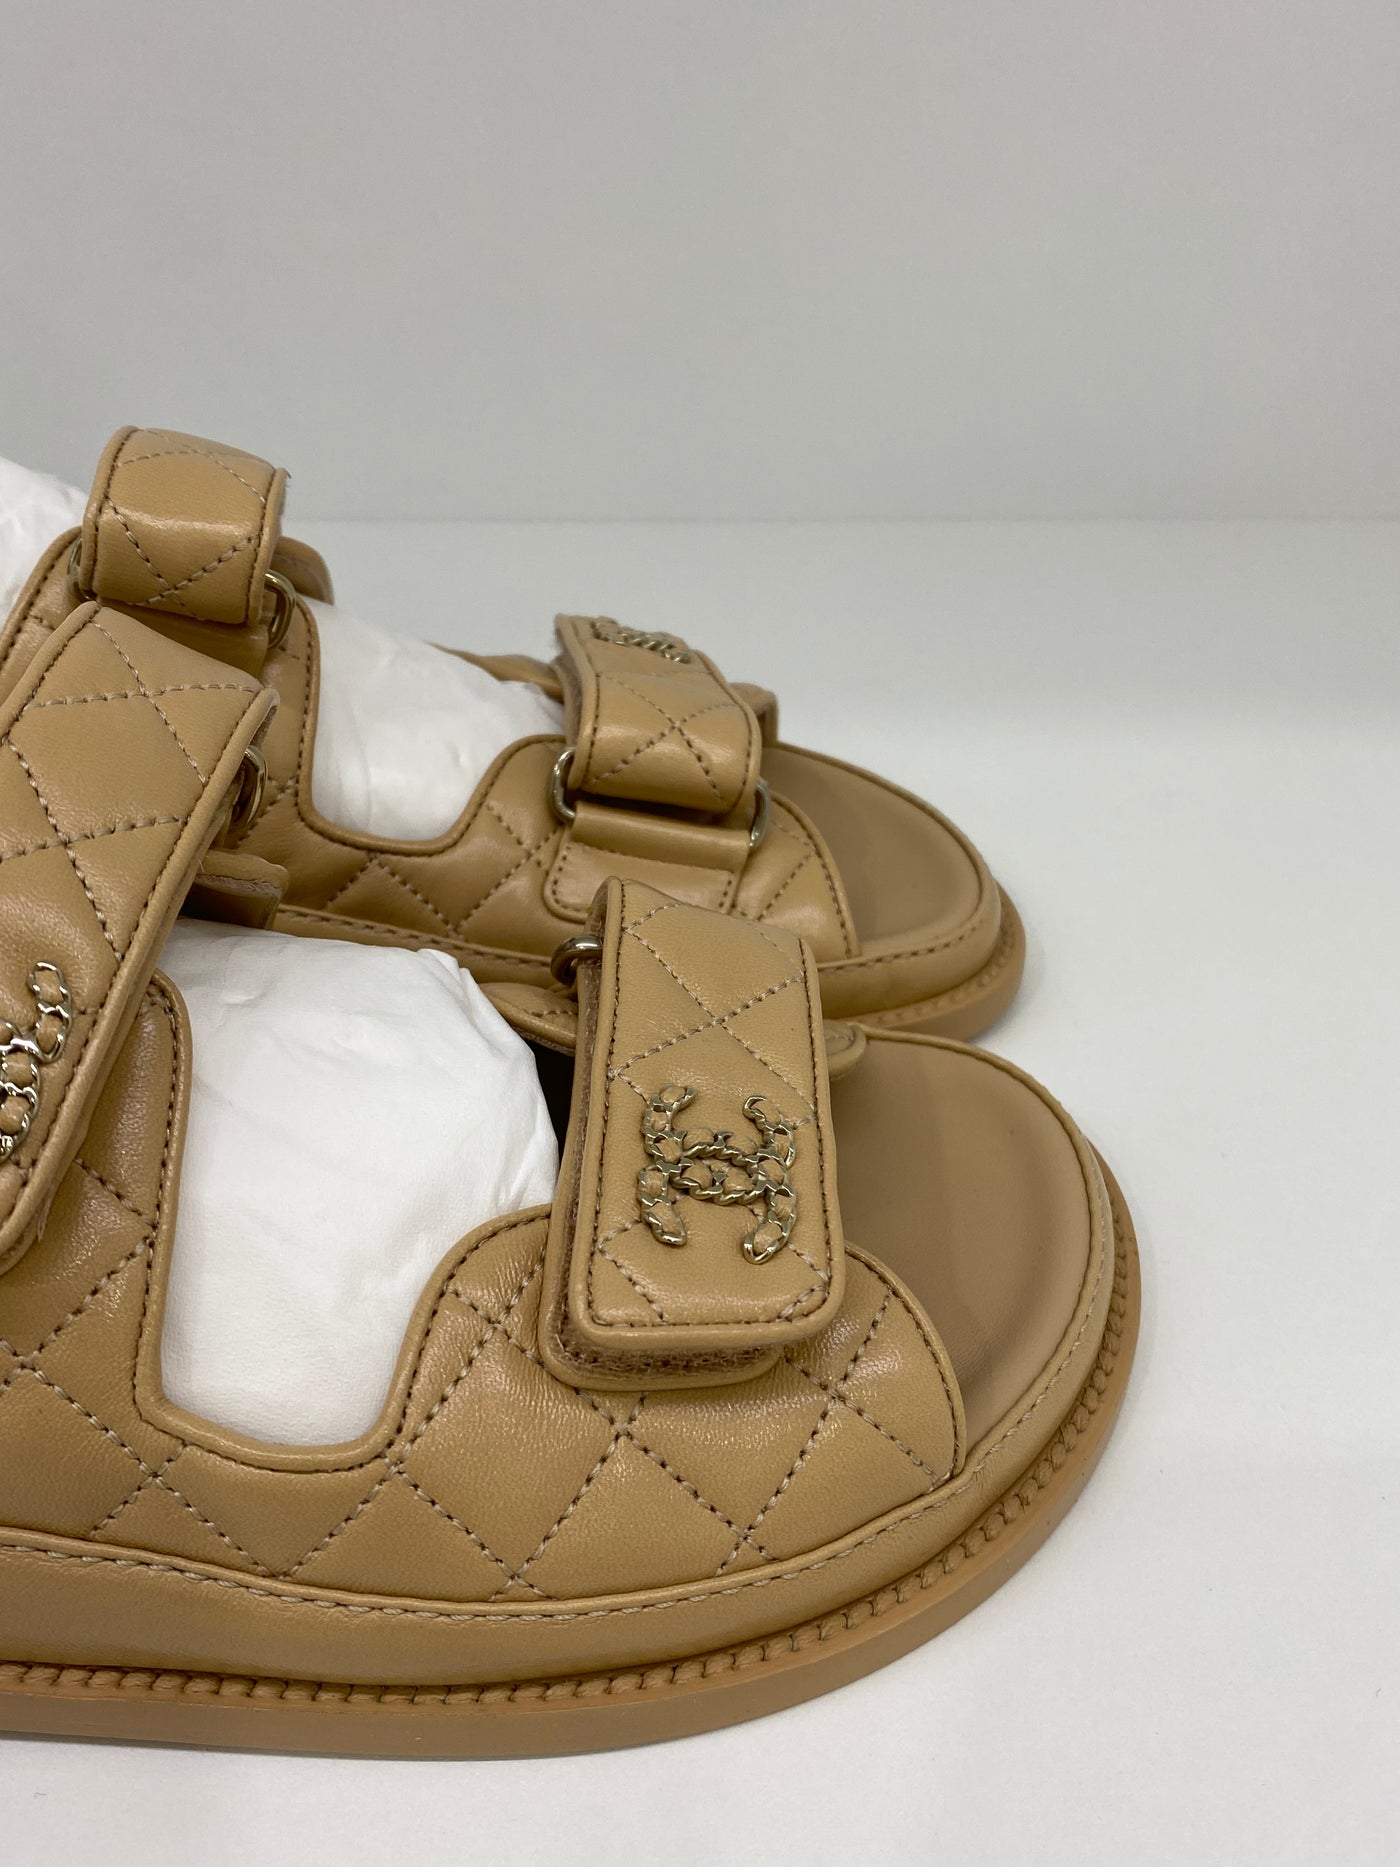 Chanel Dad Sandals Beige Size 37.5